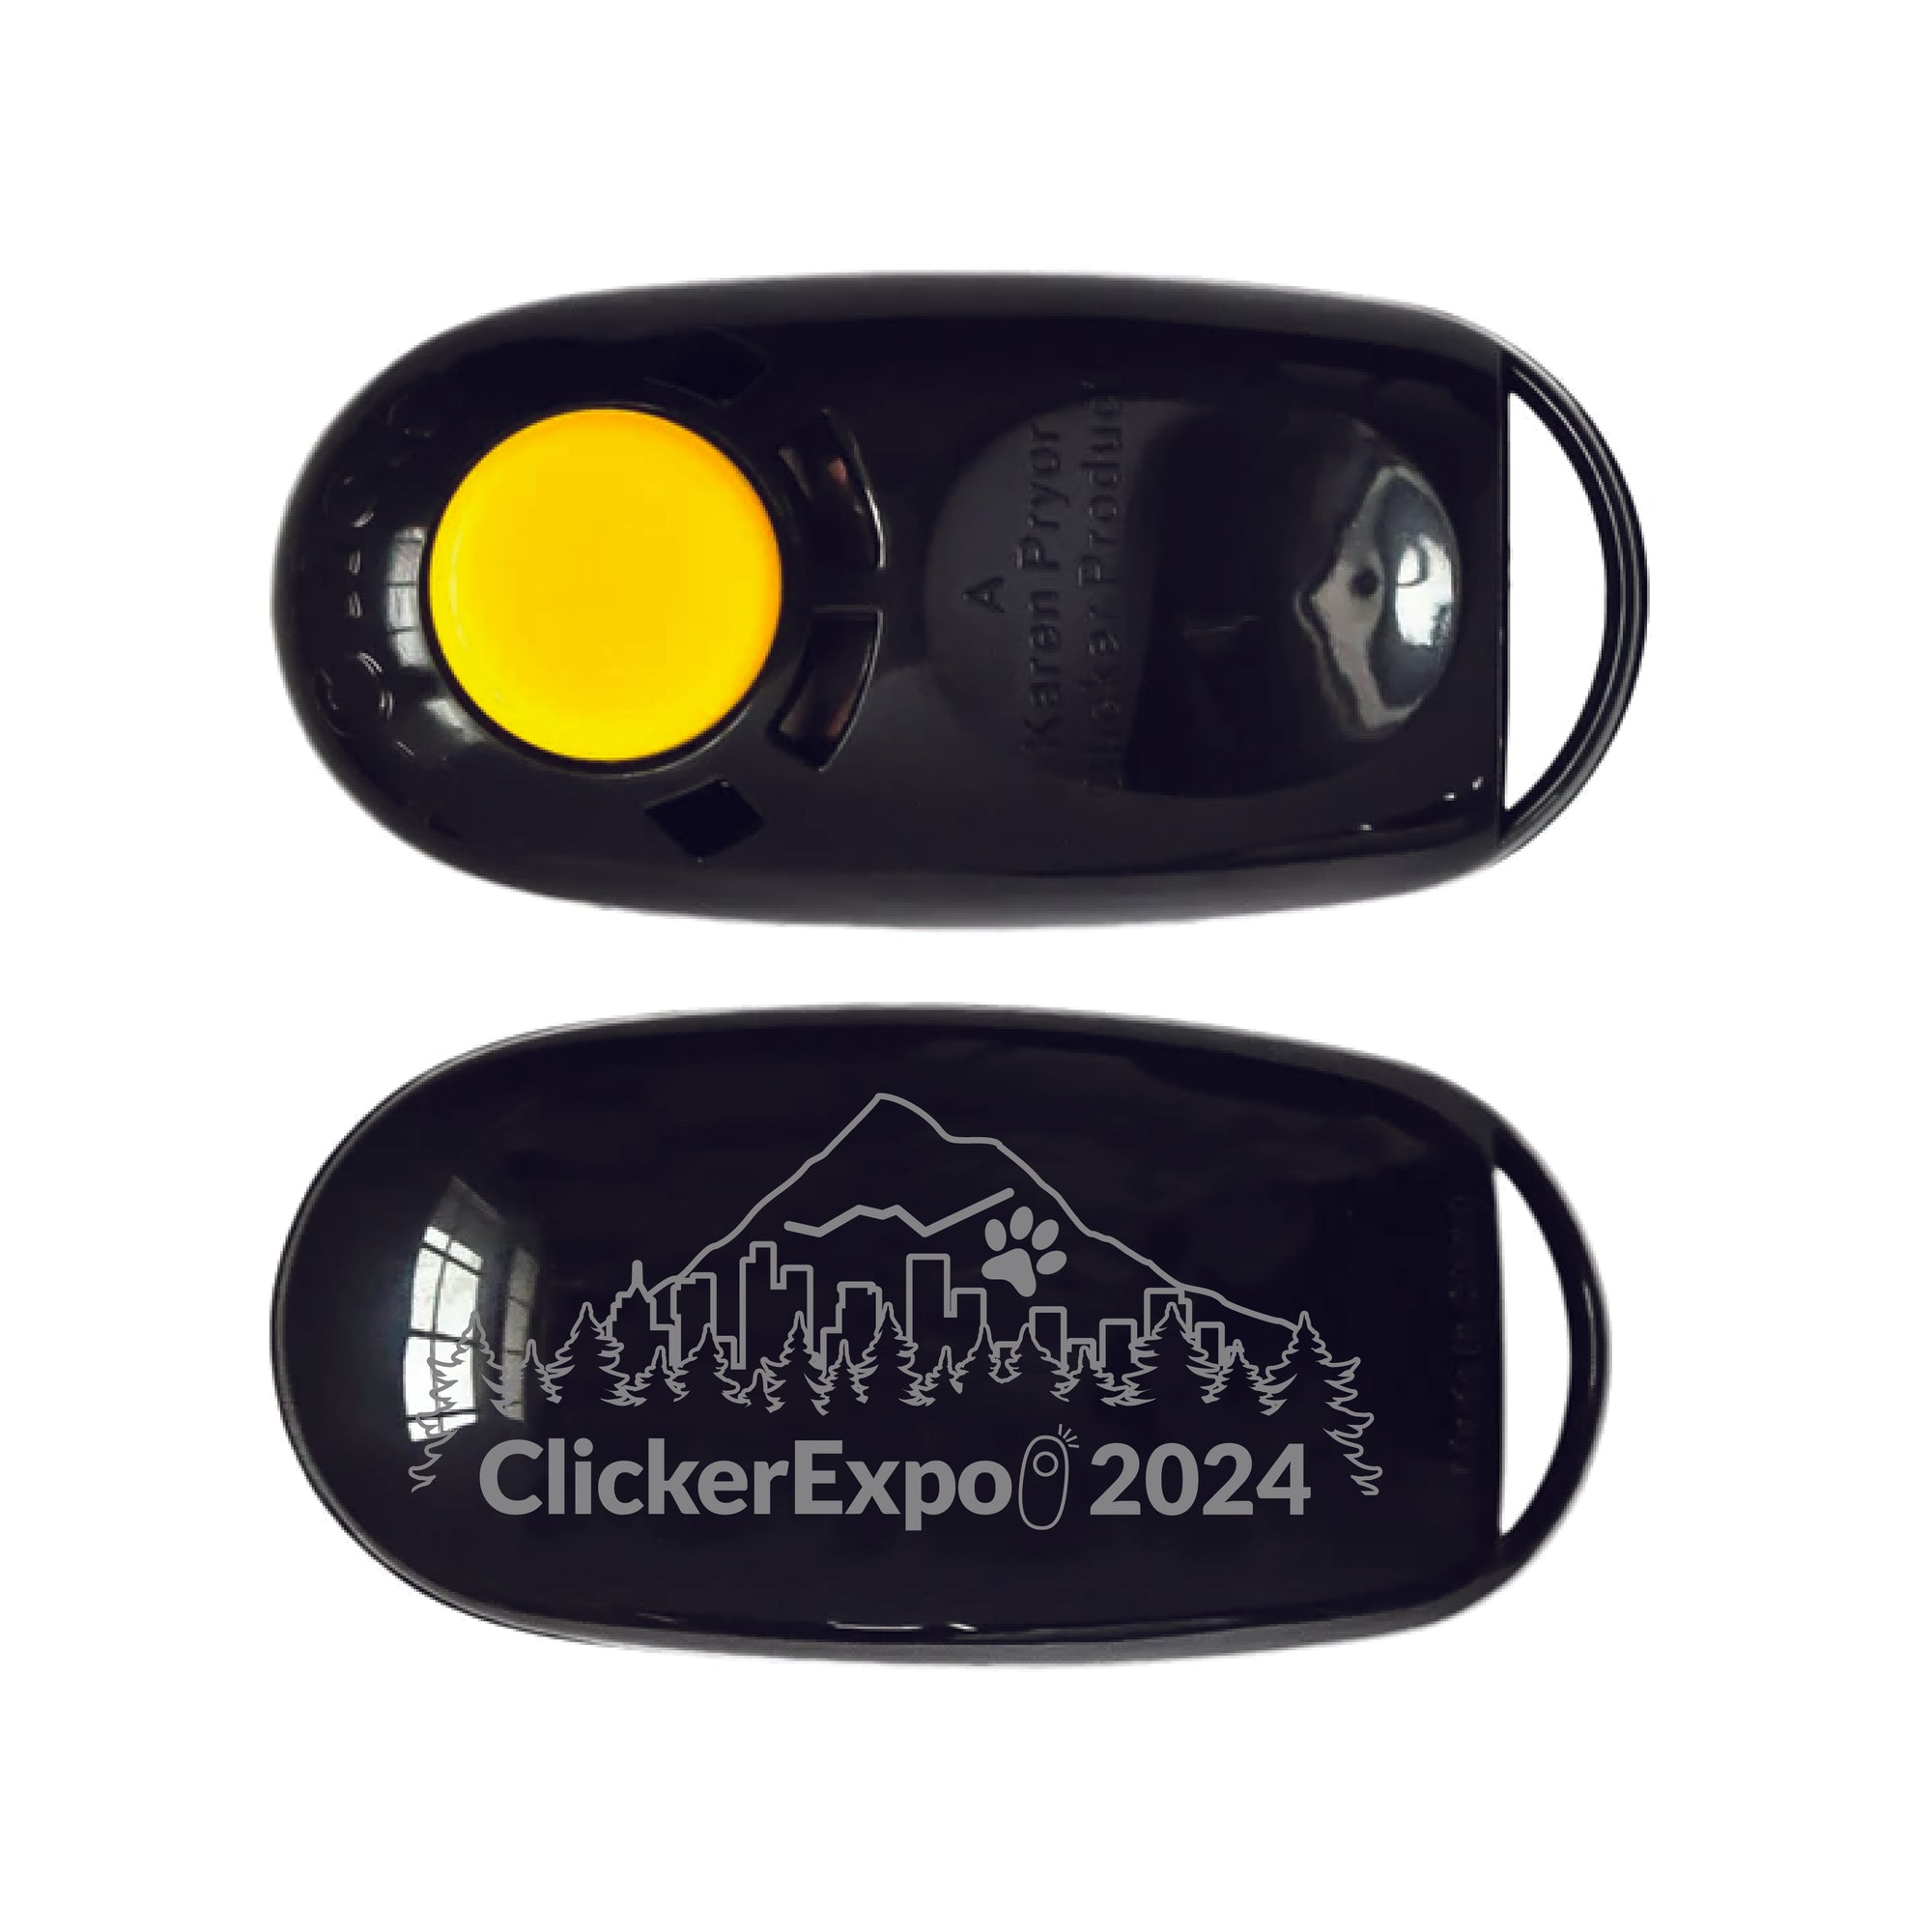 ClickerExpo 2024 Conference Clicker